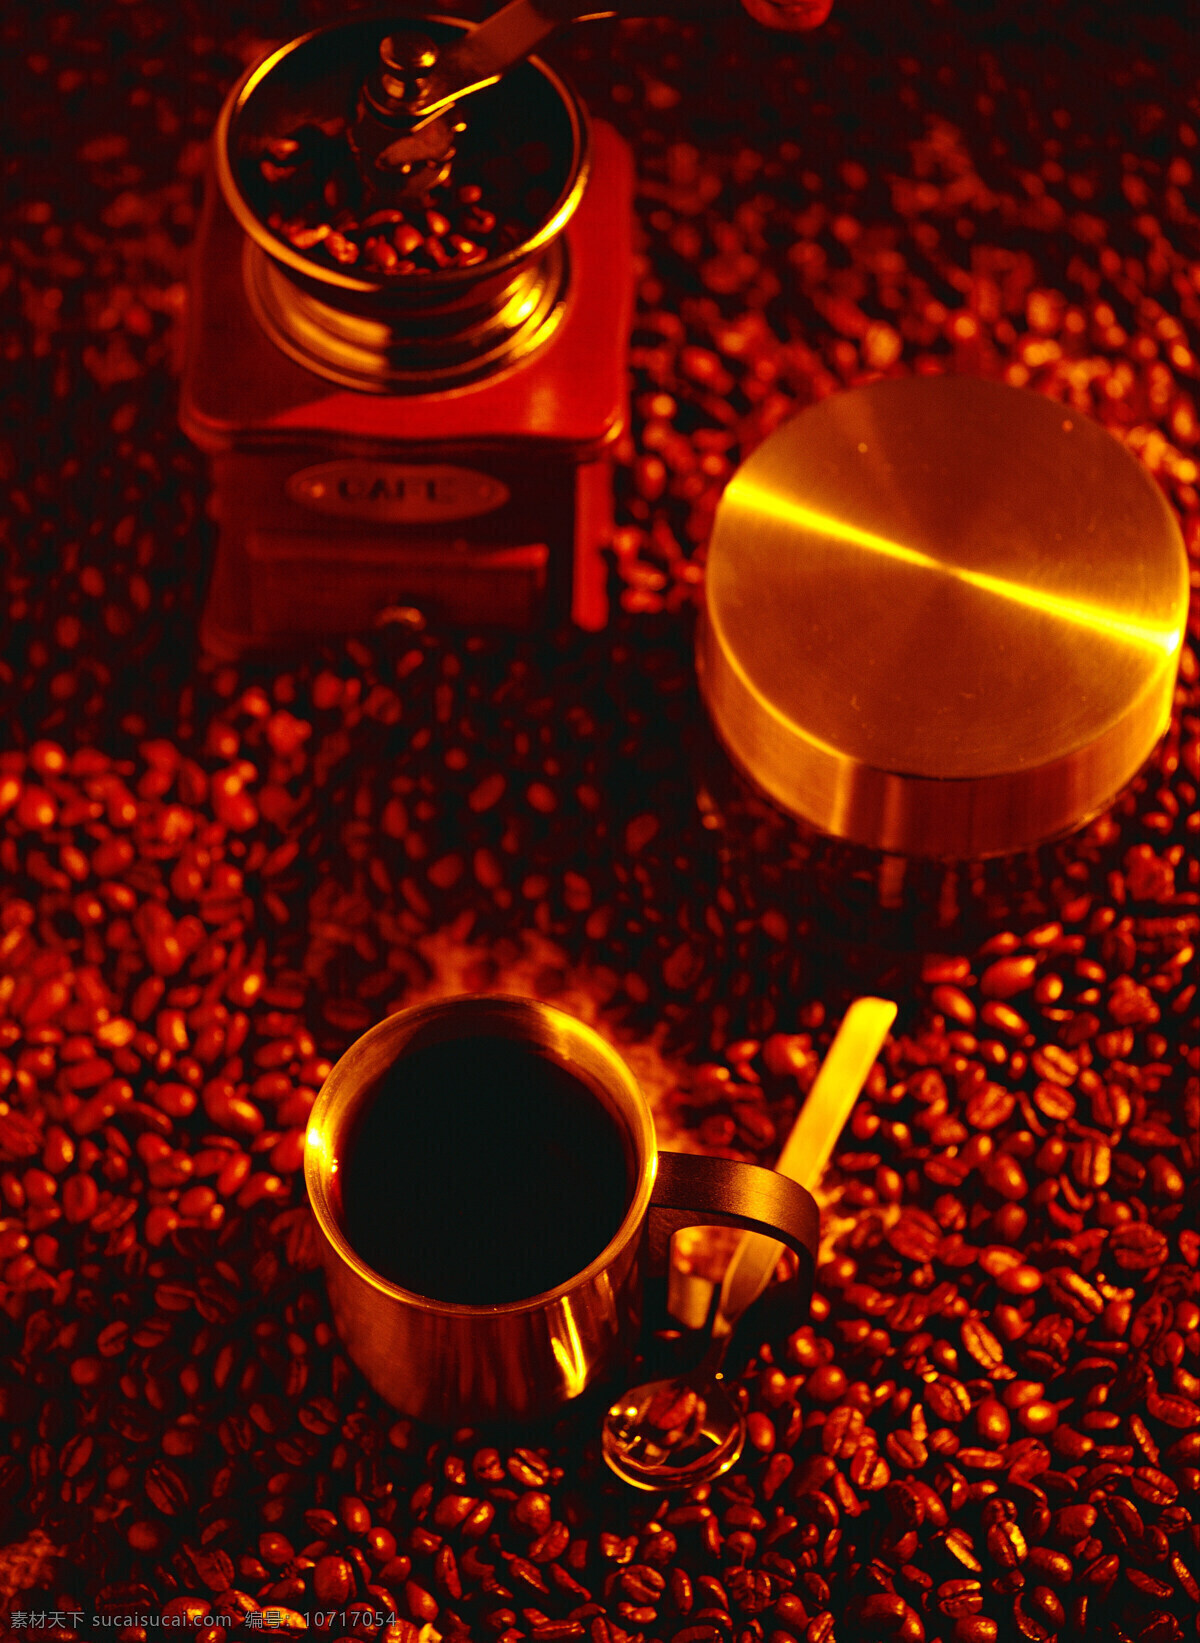 堆 褐色 咖啡豆 上 研磨机 金属物 勺子 杯子 一片咖啡豆 一堆咖啡豆 咖啡 褐色咖啡豆 磨咖啡豆机 咖啡豆研磨机 高清图片 咖啡图片 餐饮美食